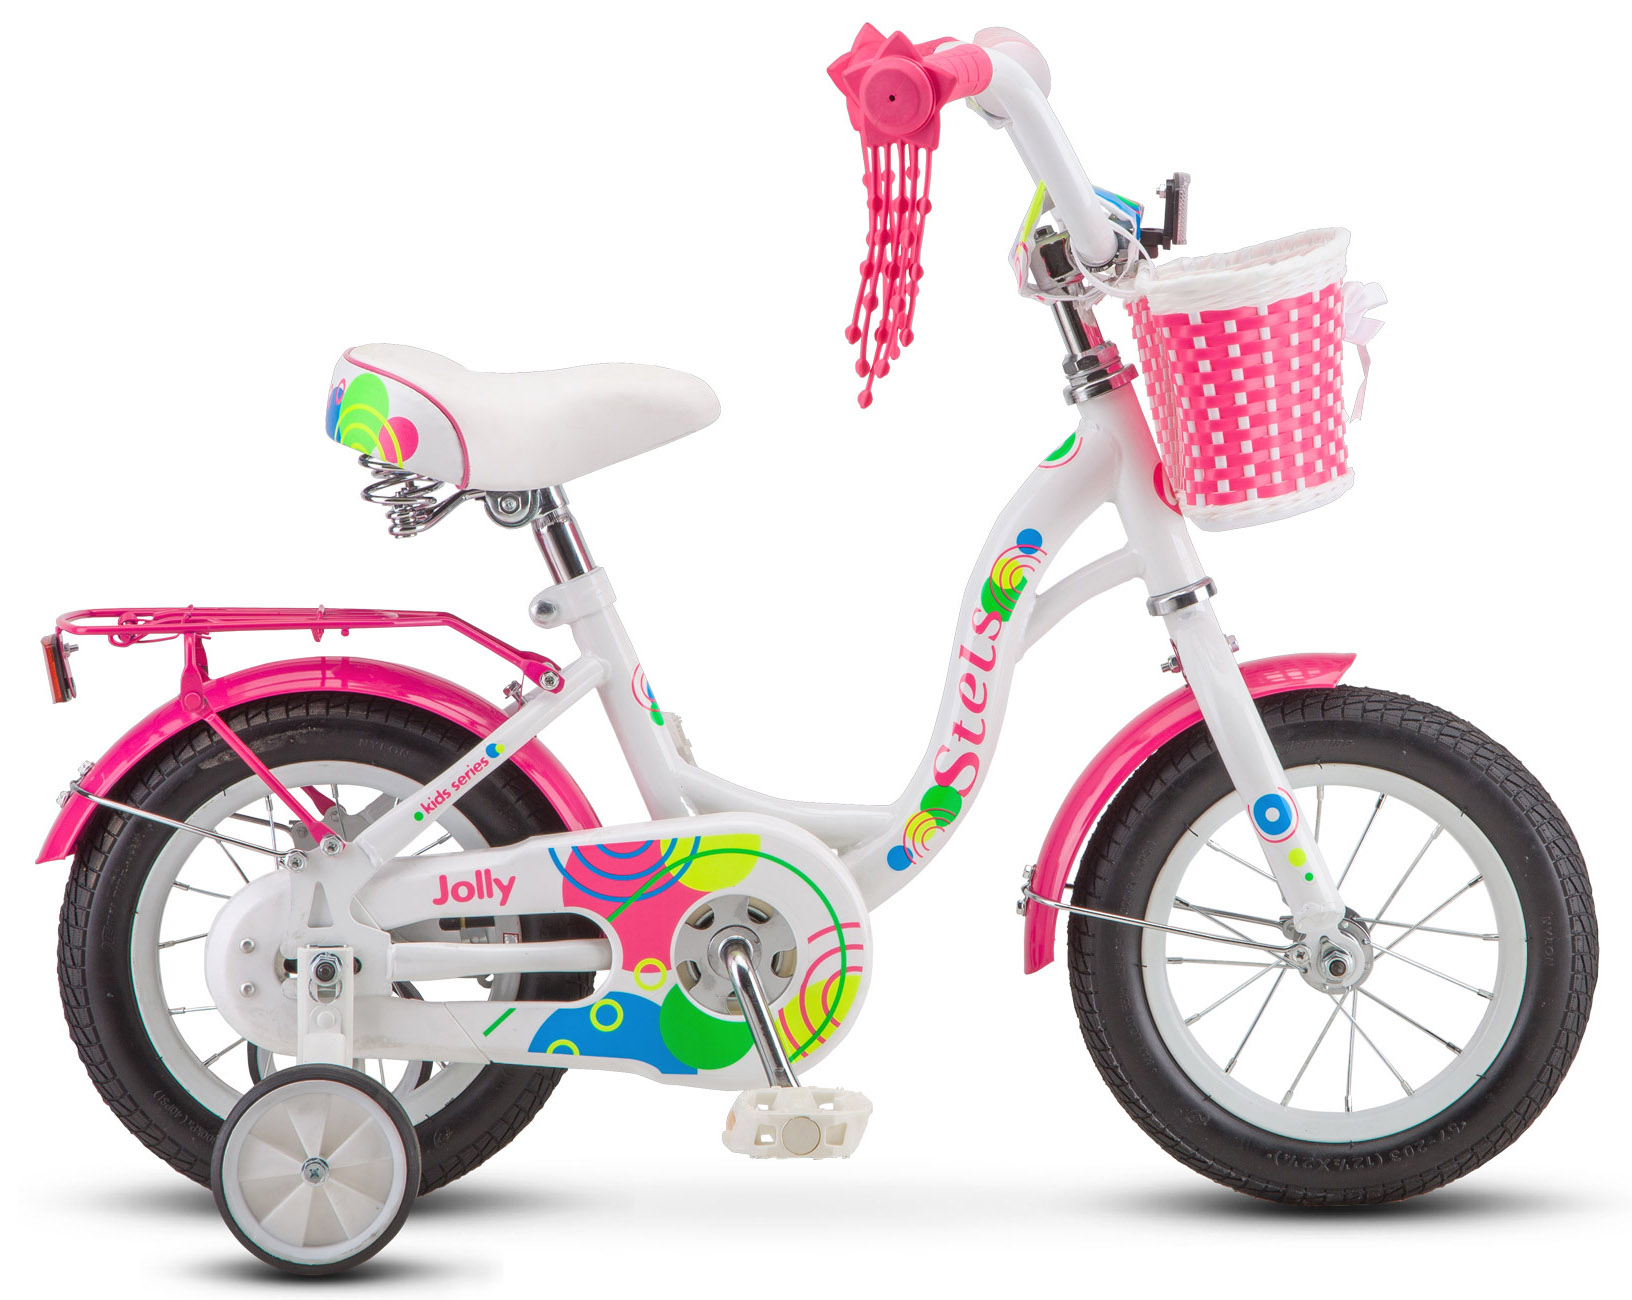  Отзывы о Детском велосипеде Stels Jolly 12 V010 2020